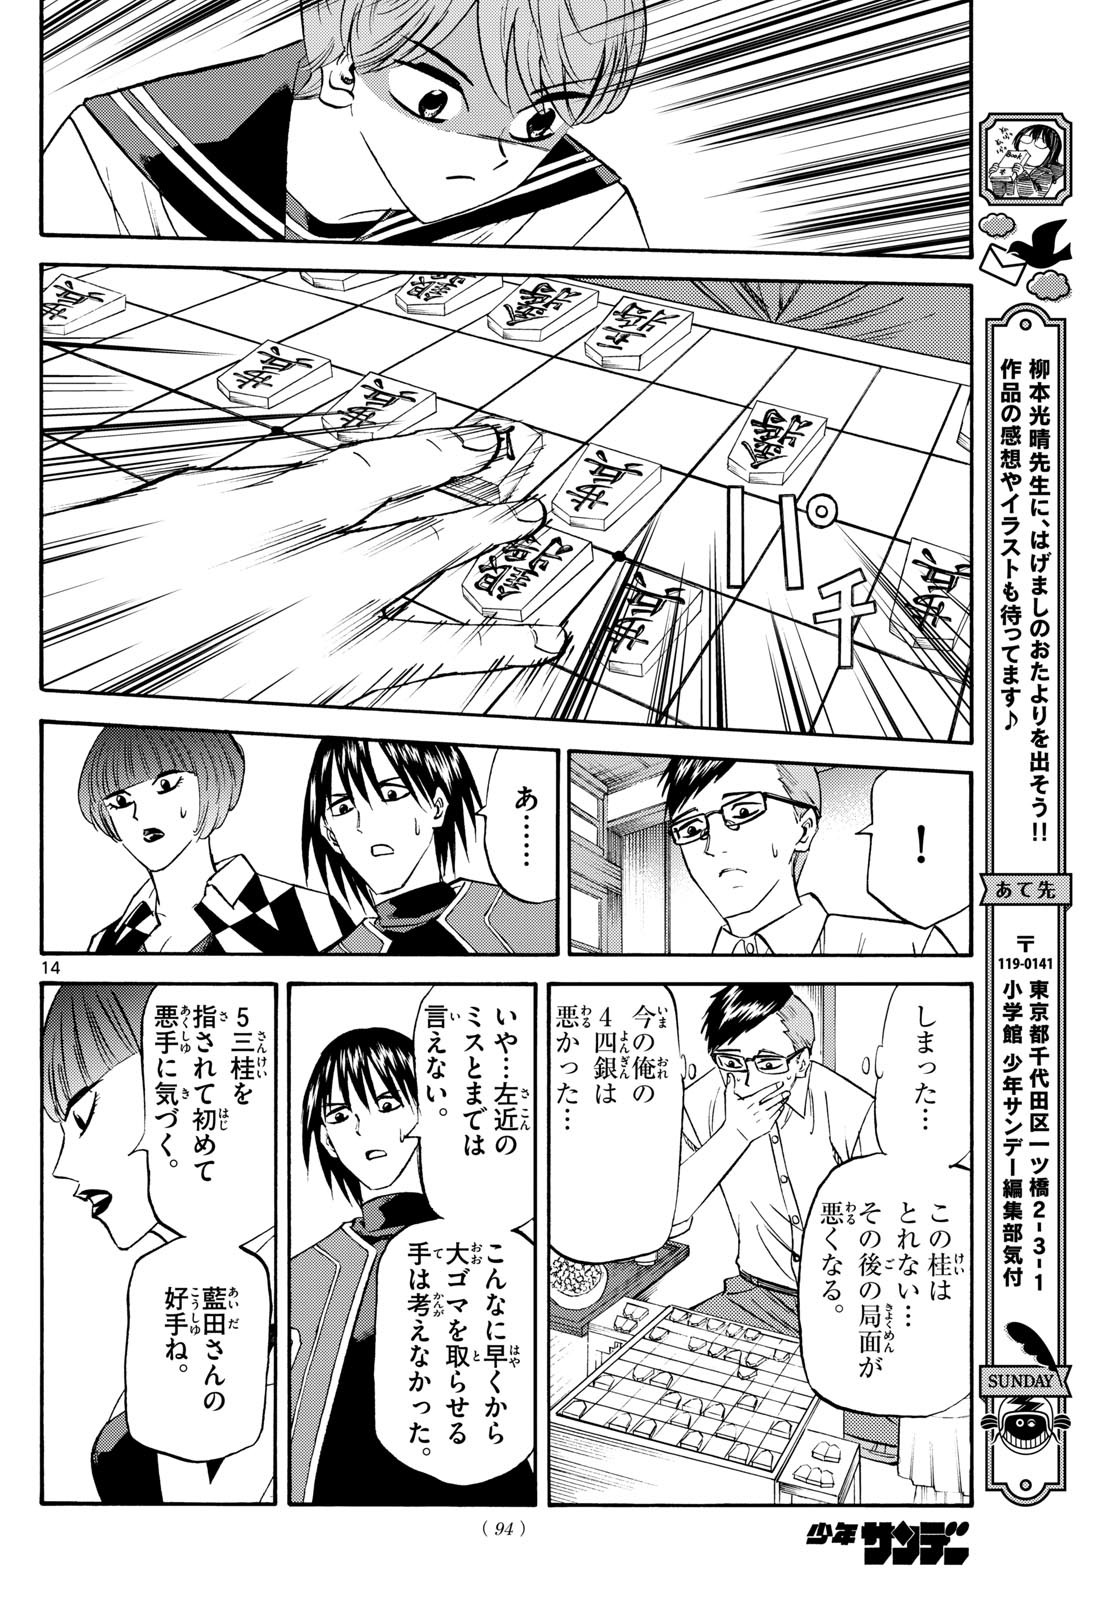 Ryu-to-Ichigo - Chapter 196 - Page 14